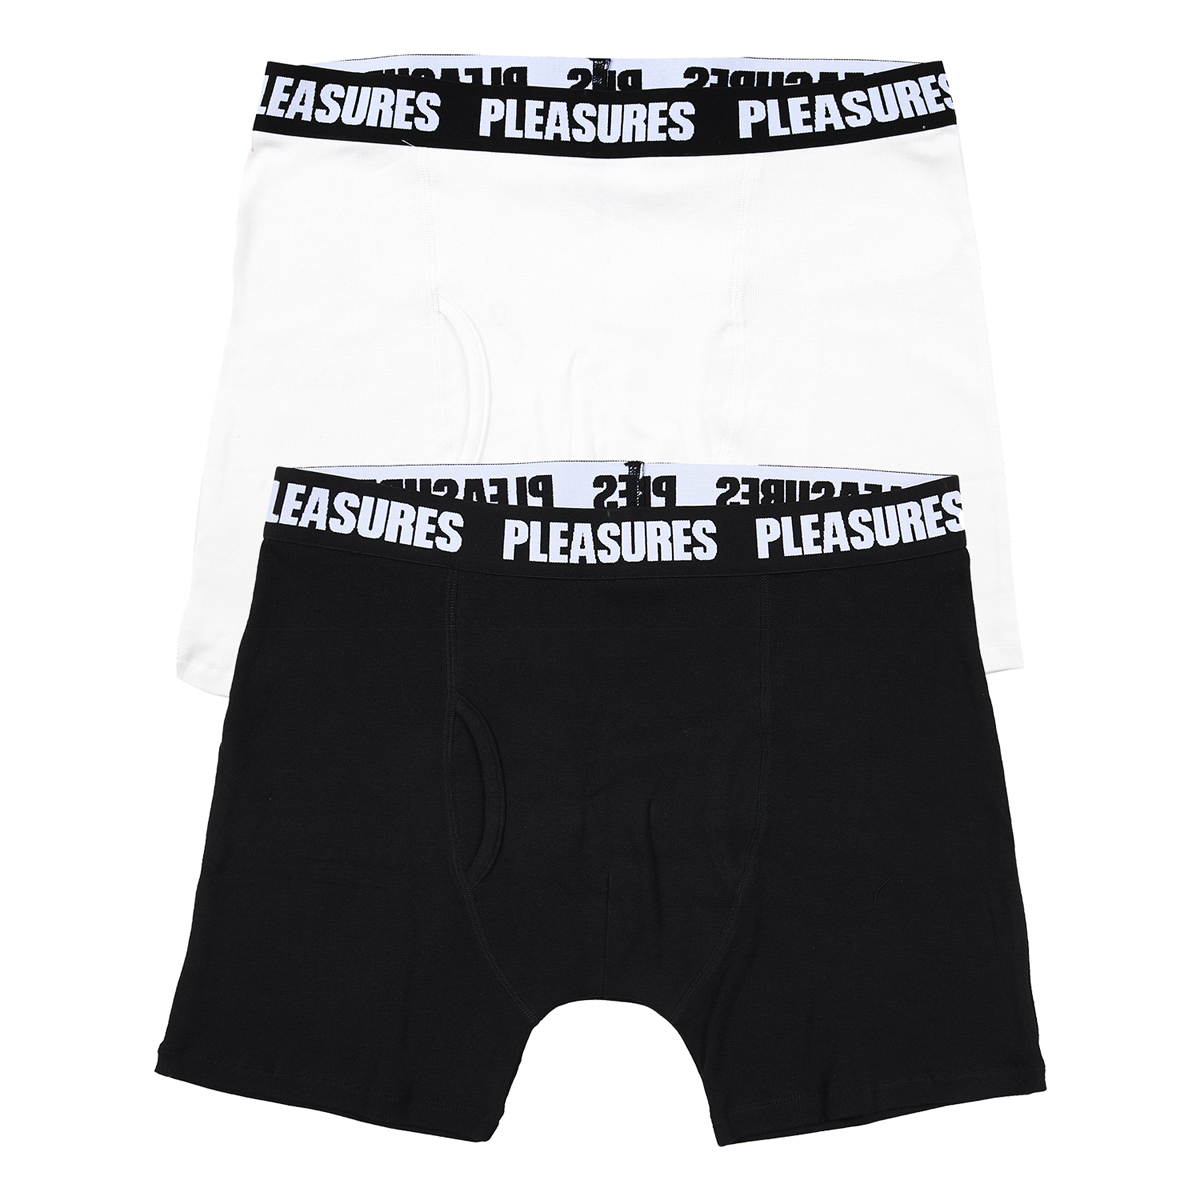 Pleasures Boxer Brief - 2 Pack, Black/White